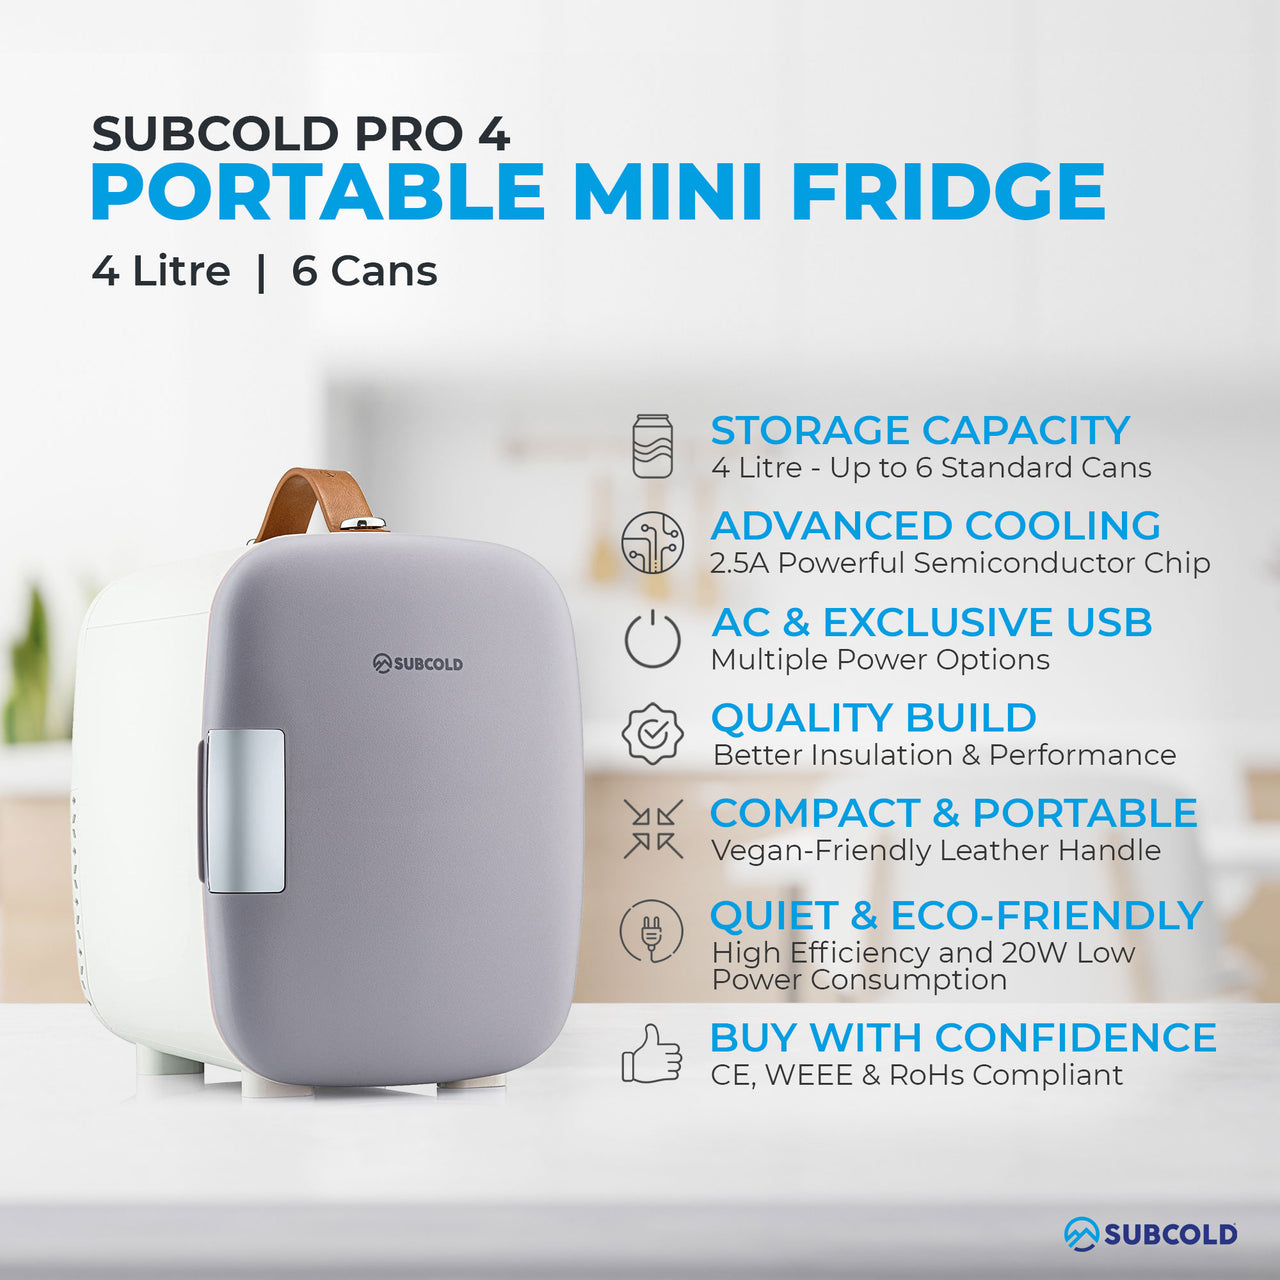 Subcold Pro 4 litre grey mini fridge features infographic